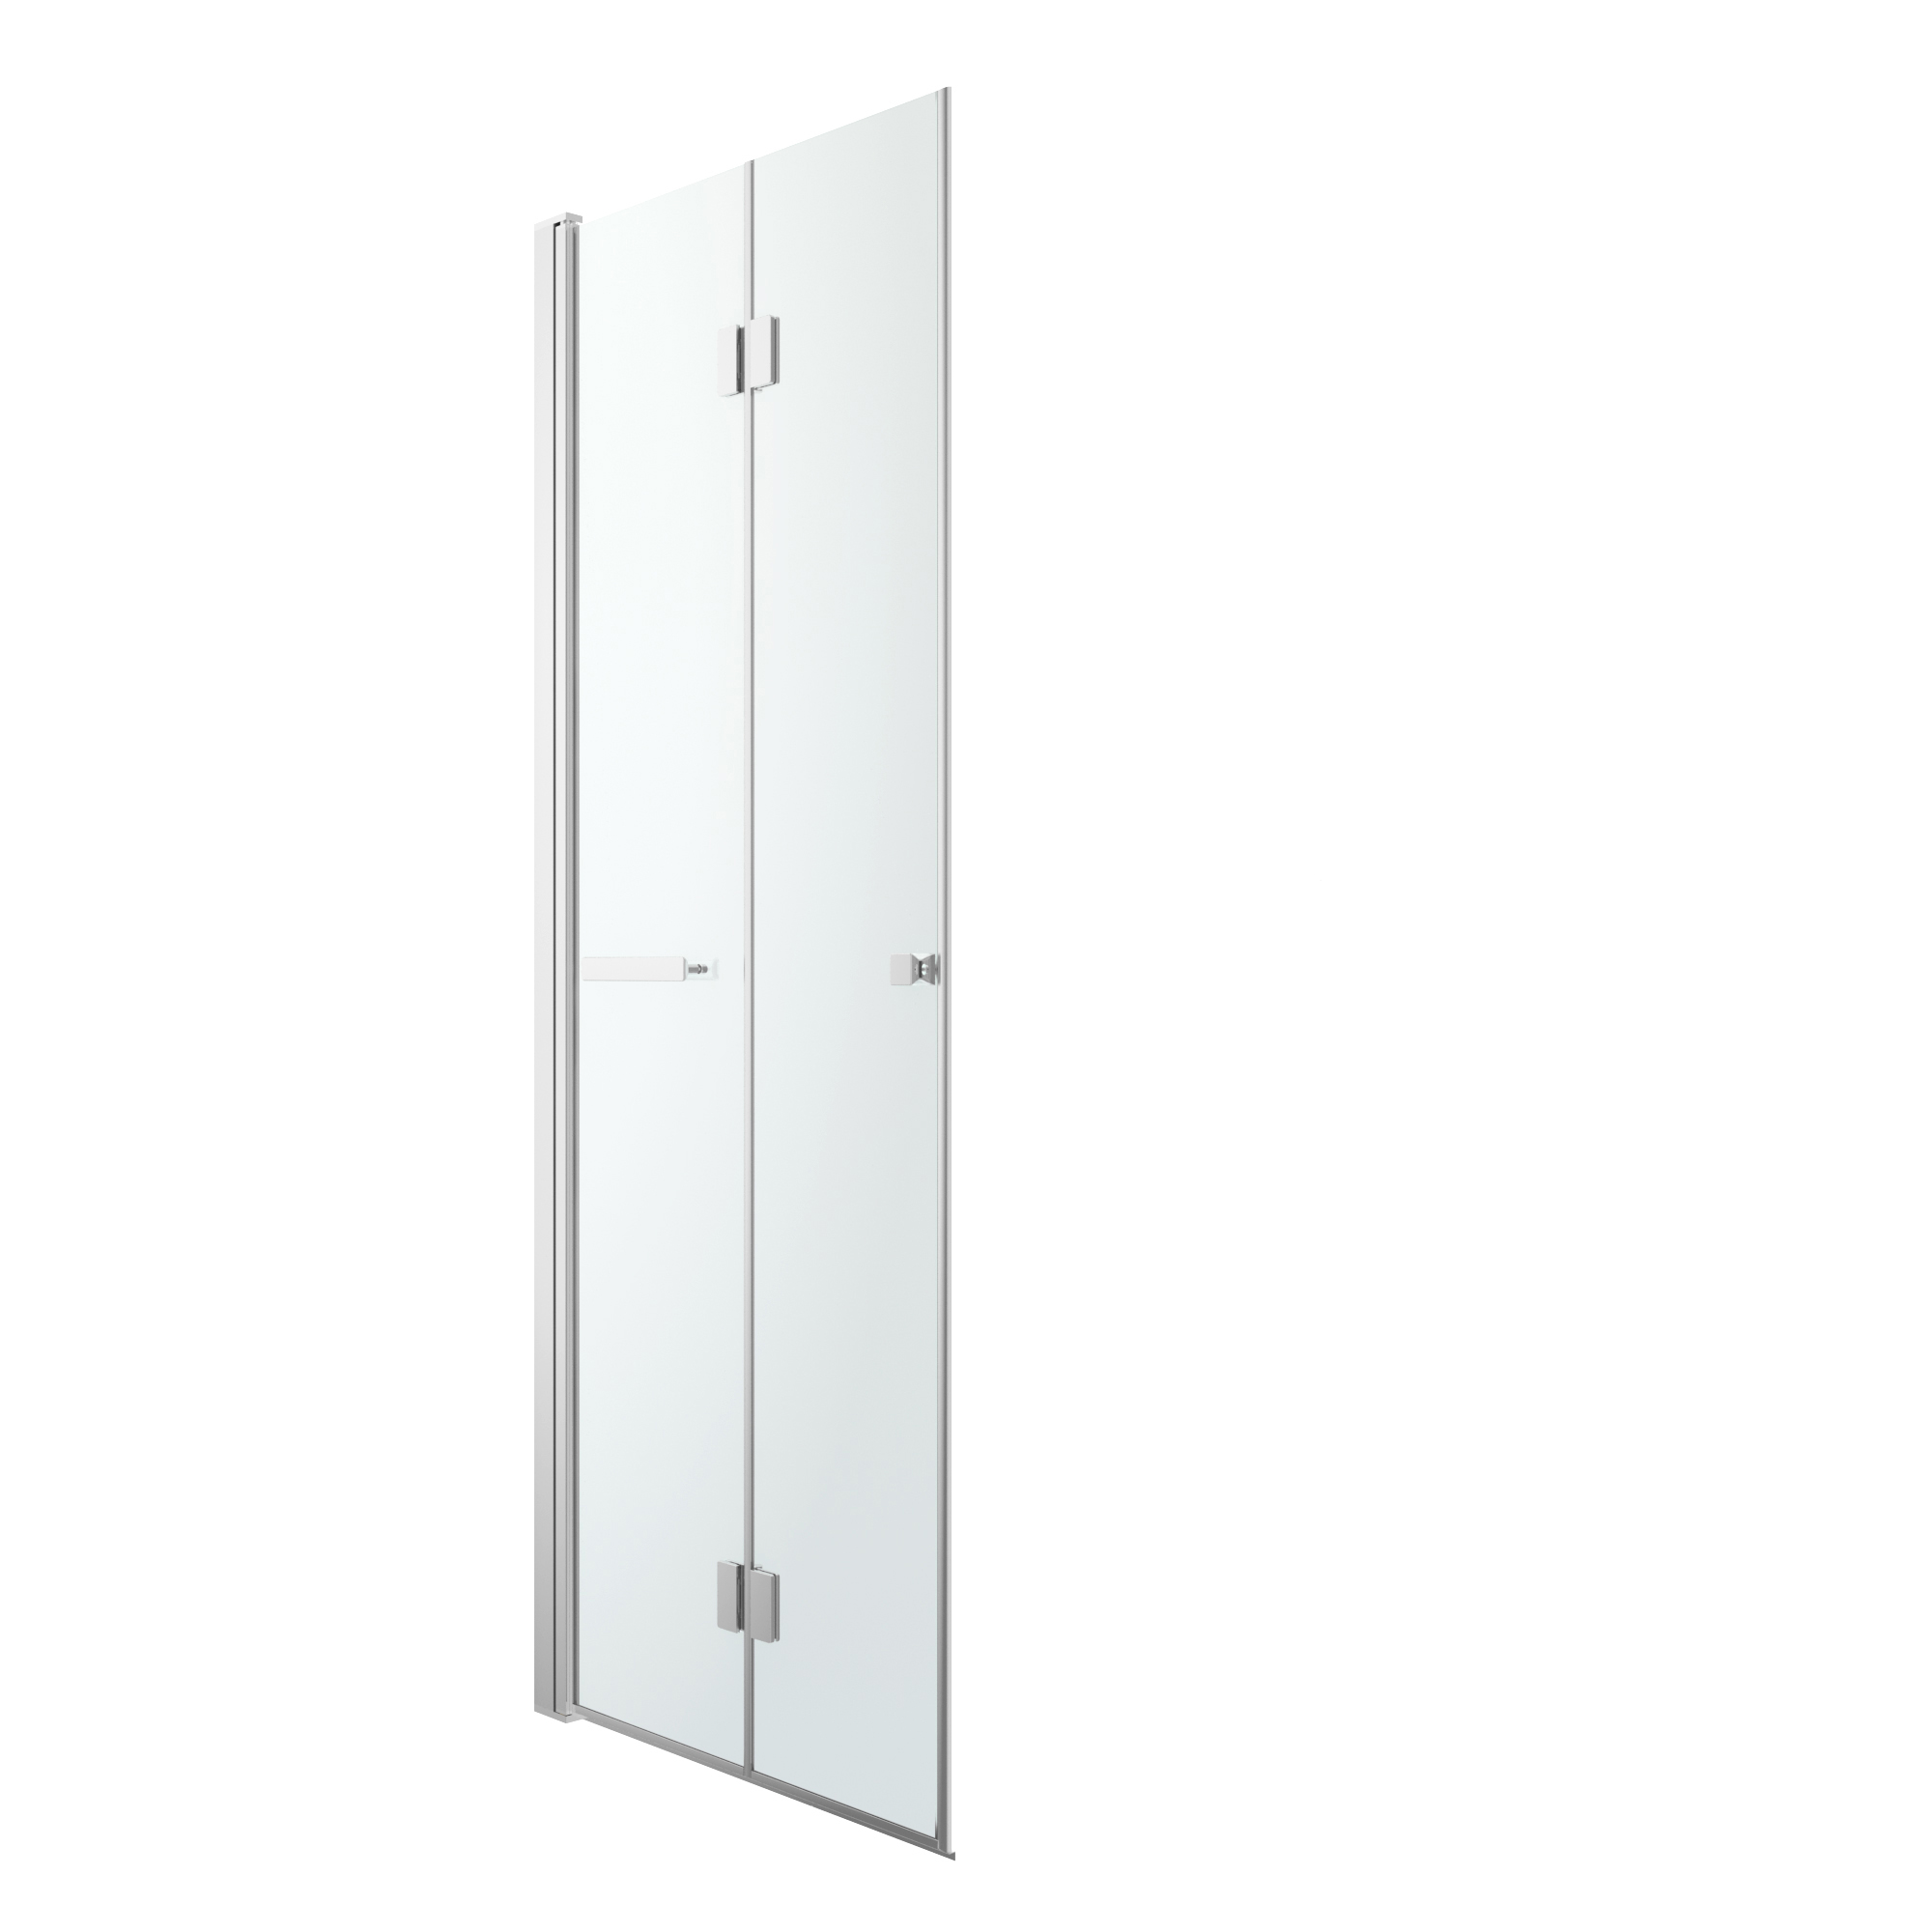 Душевая дверь 80 см. Дверь поворотная Cooke & Lewis Beloya, прозрачное стекло, 90 см. Душевая дверь Beloya. Складная дверь для душевой Castorama.